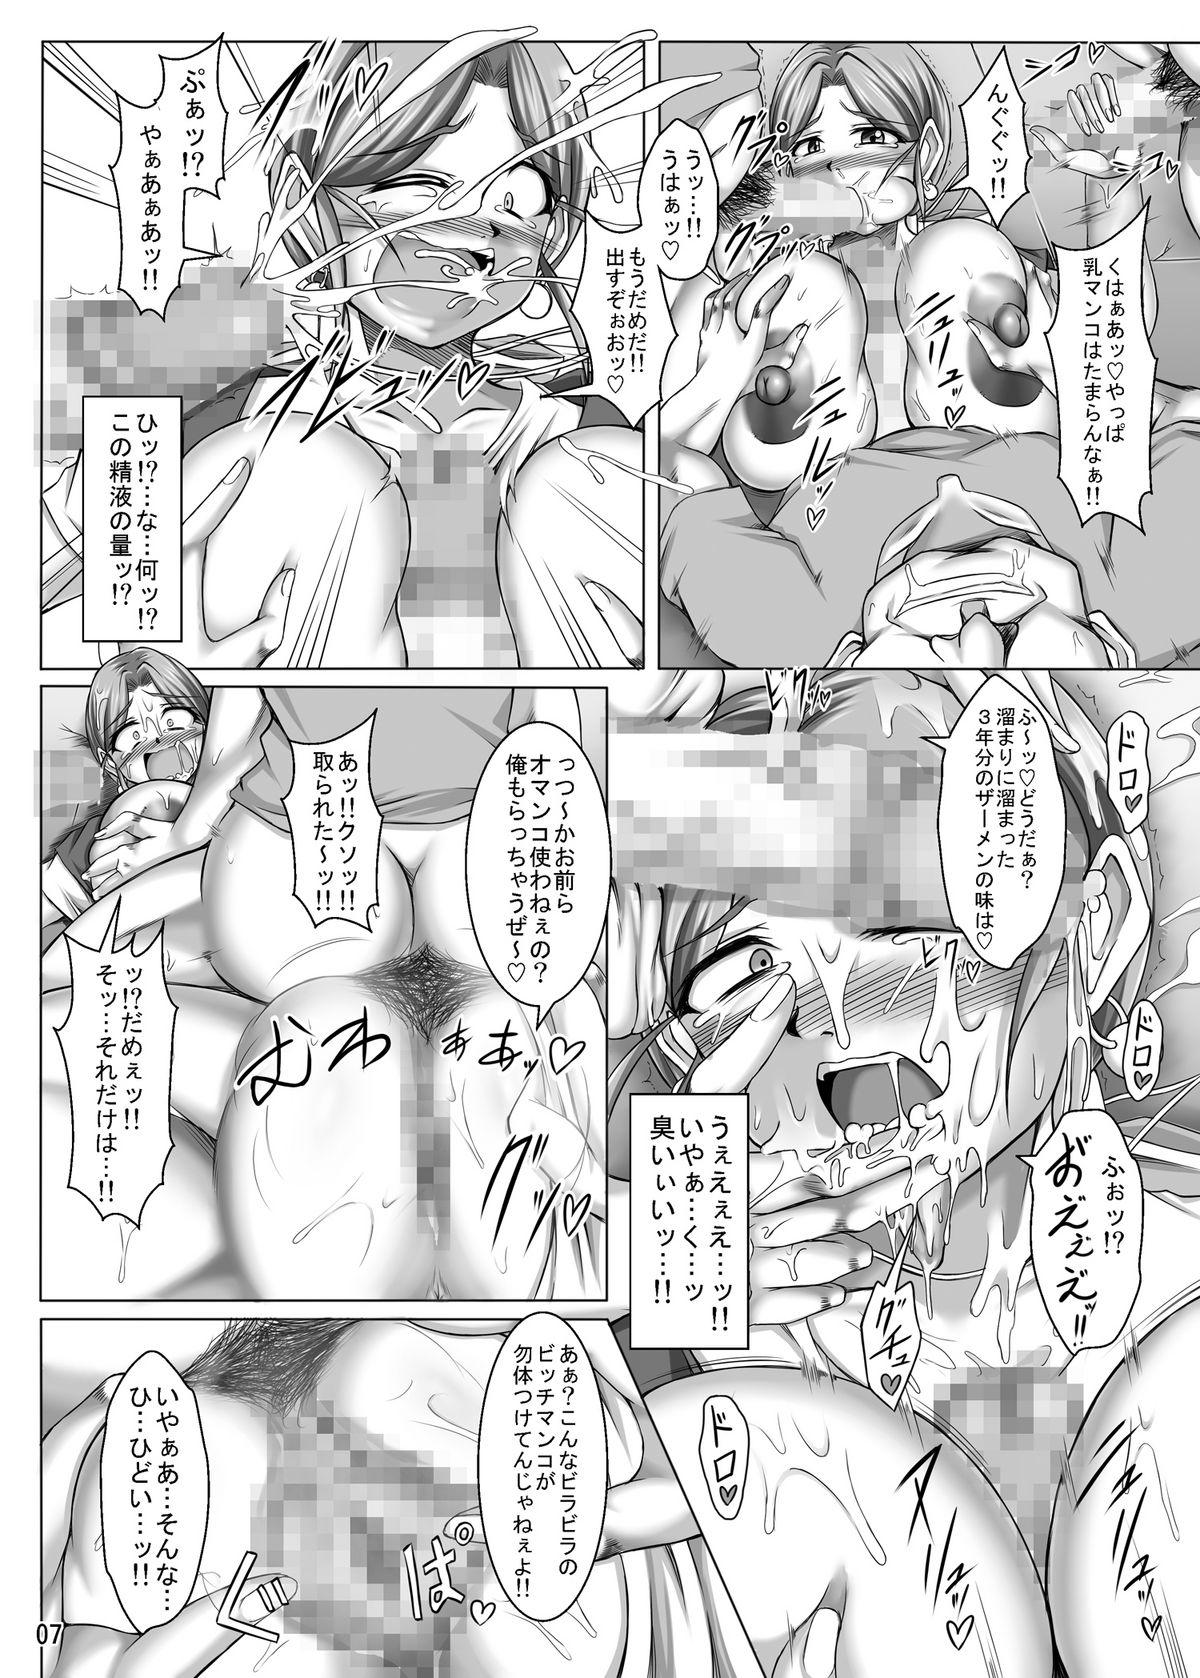 Anale Toruneko Fujin Nene 37 Dannani himitsu no rougoku sontsukuri - Dragon quest iv Joven - Page 7